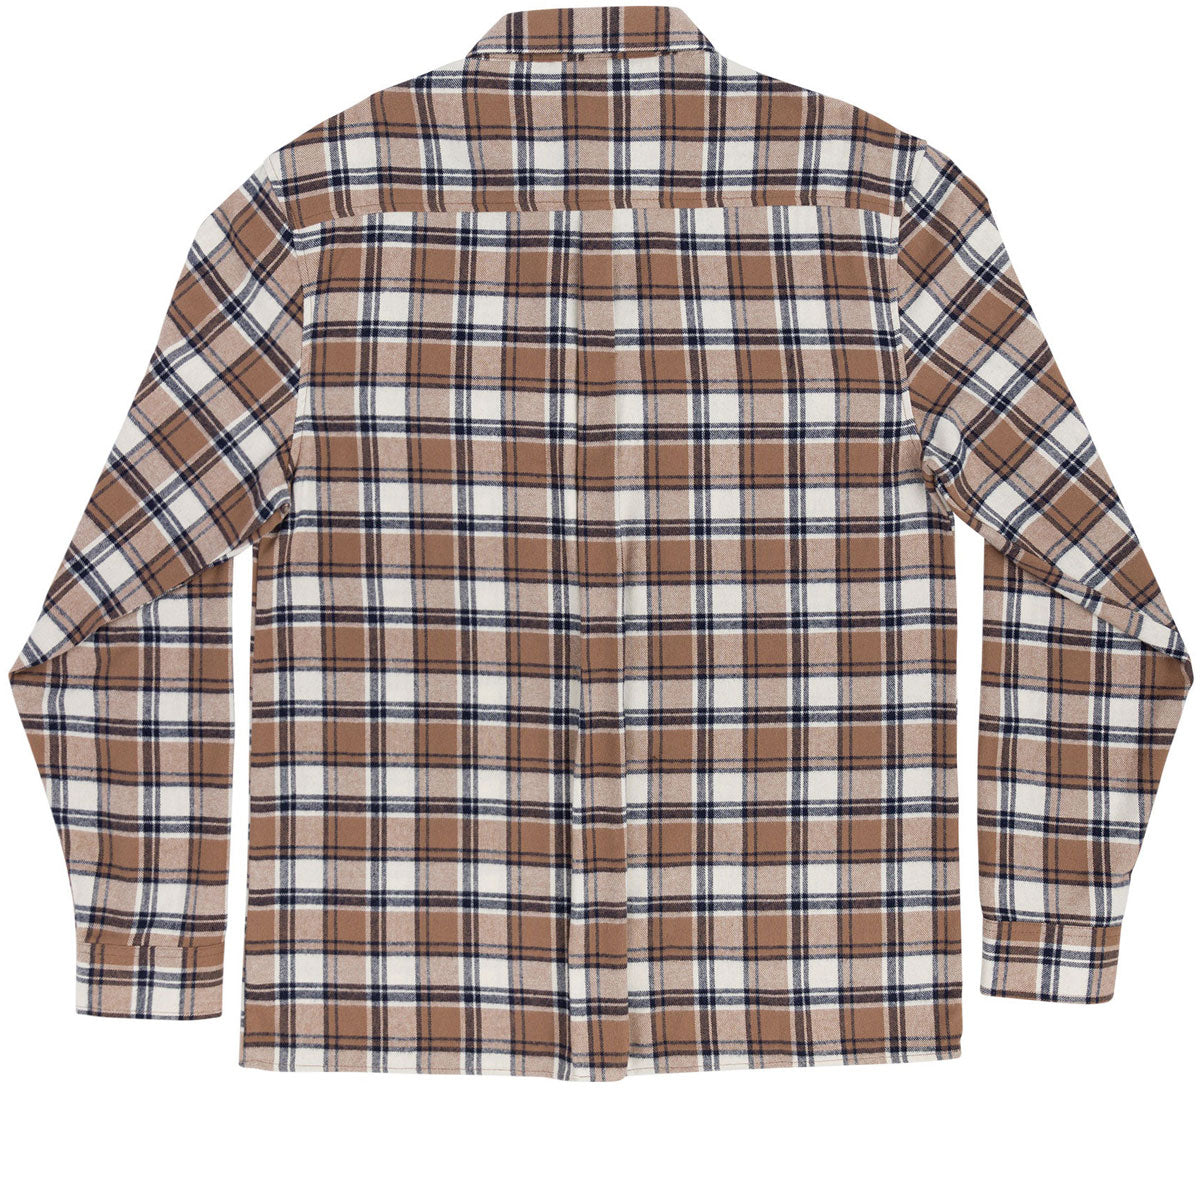 Independent BTG Cress Long Sleeve Flannel Shirt - Ginger Plaid image 2